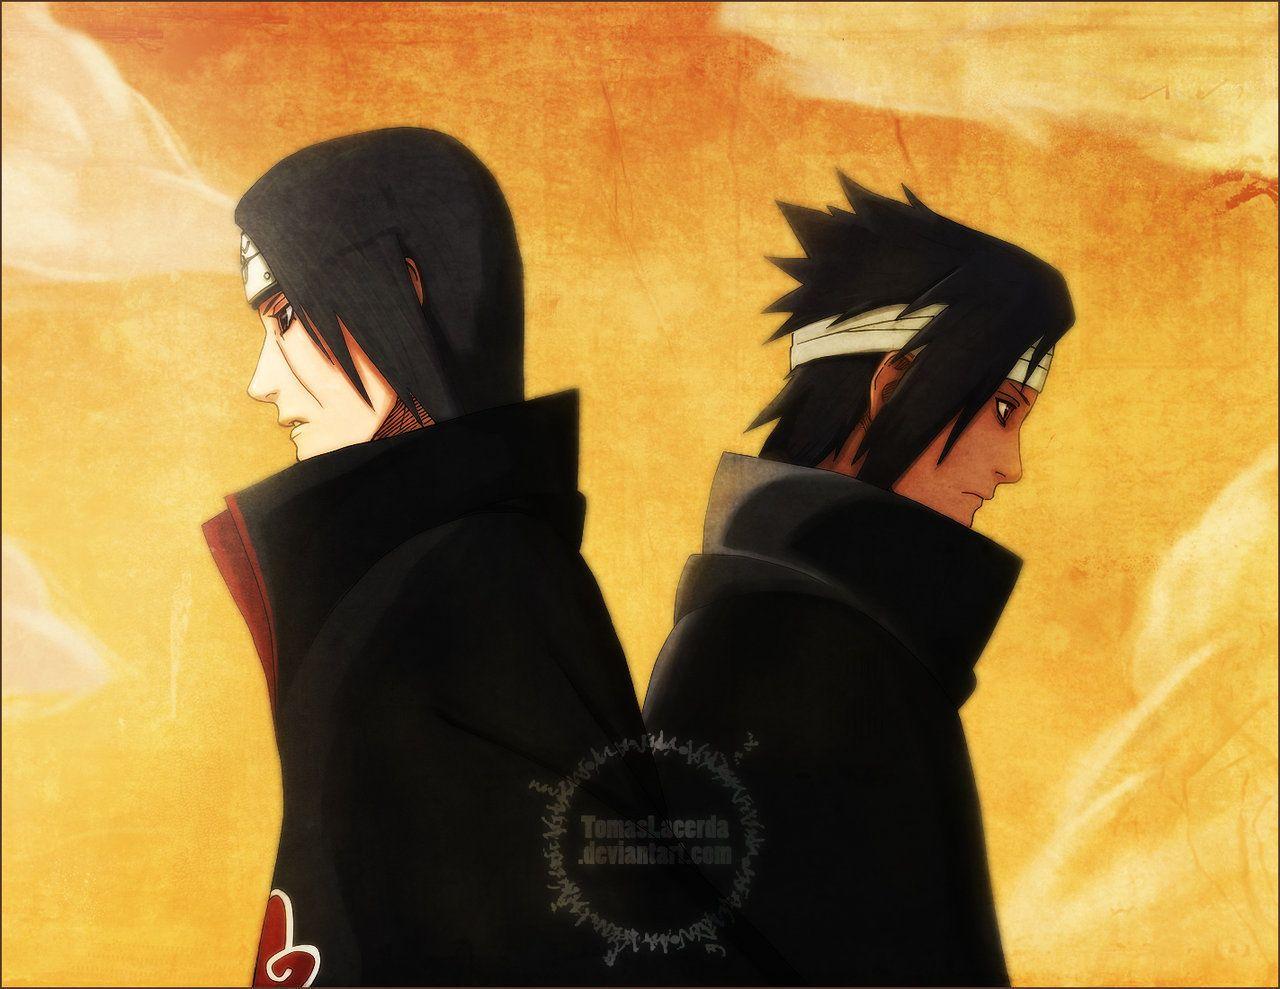 Hình ảnh Sasuke và Itachi - Thưởng thức những hình ảnh đầy cảm xúc của Sasuke và Itachi - hai anh em Uchiha đầy bí ẩn. Với những cảnh quay mãn nhãn và đầy kịch tính trong bộ anime đình đám Naruto, bạn sẽ được chiêm ngưỡng vẻ đẹp của hình ảnh này.